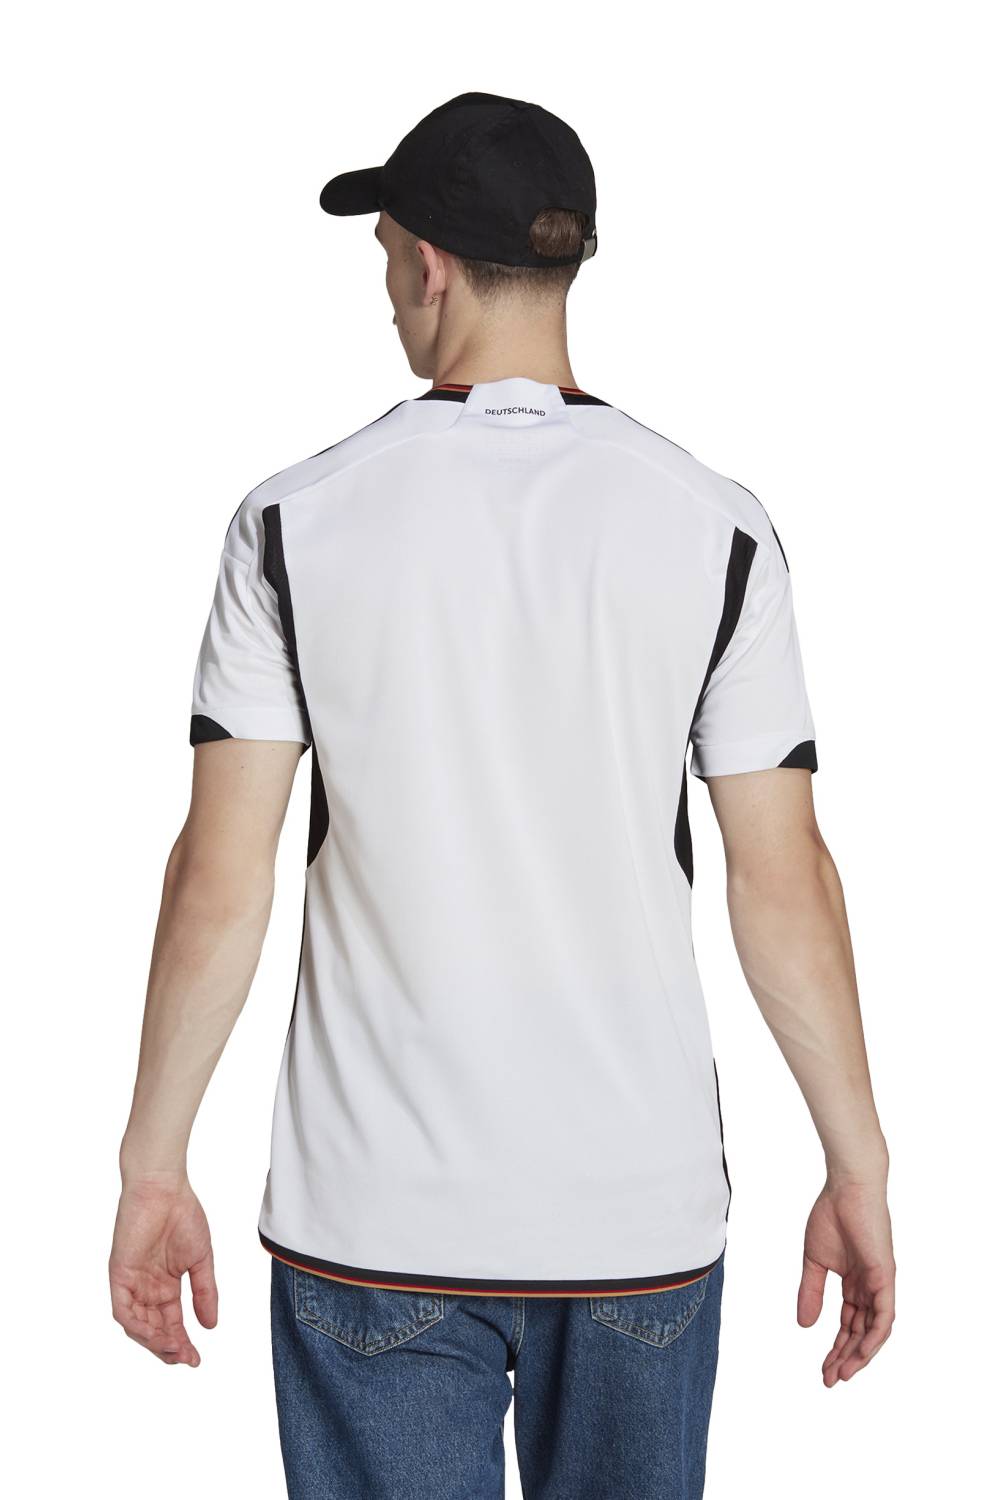 ADIDAS - Camiseta De Fútbol Alemania Local Hombre Adidas